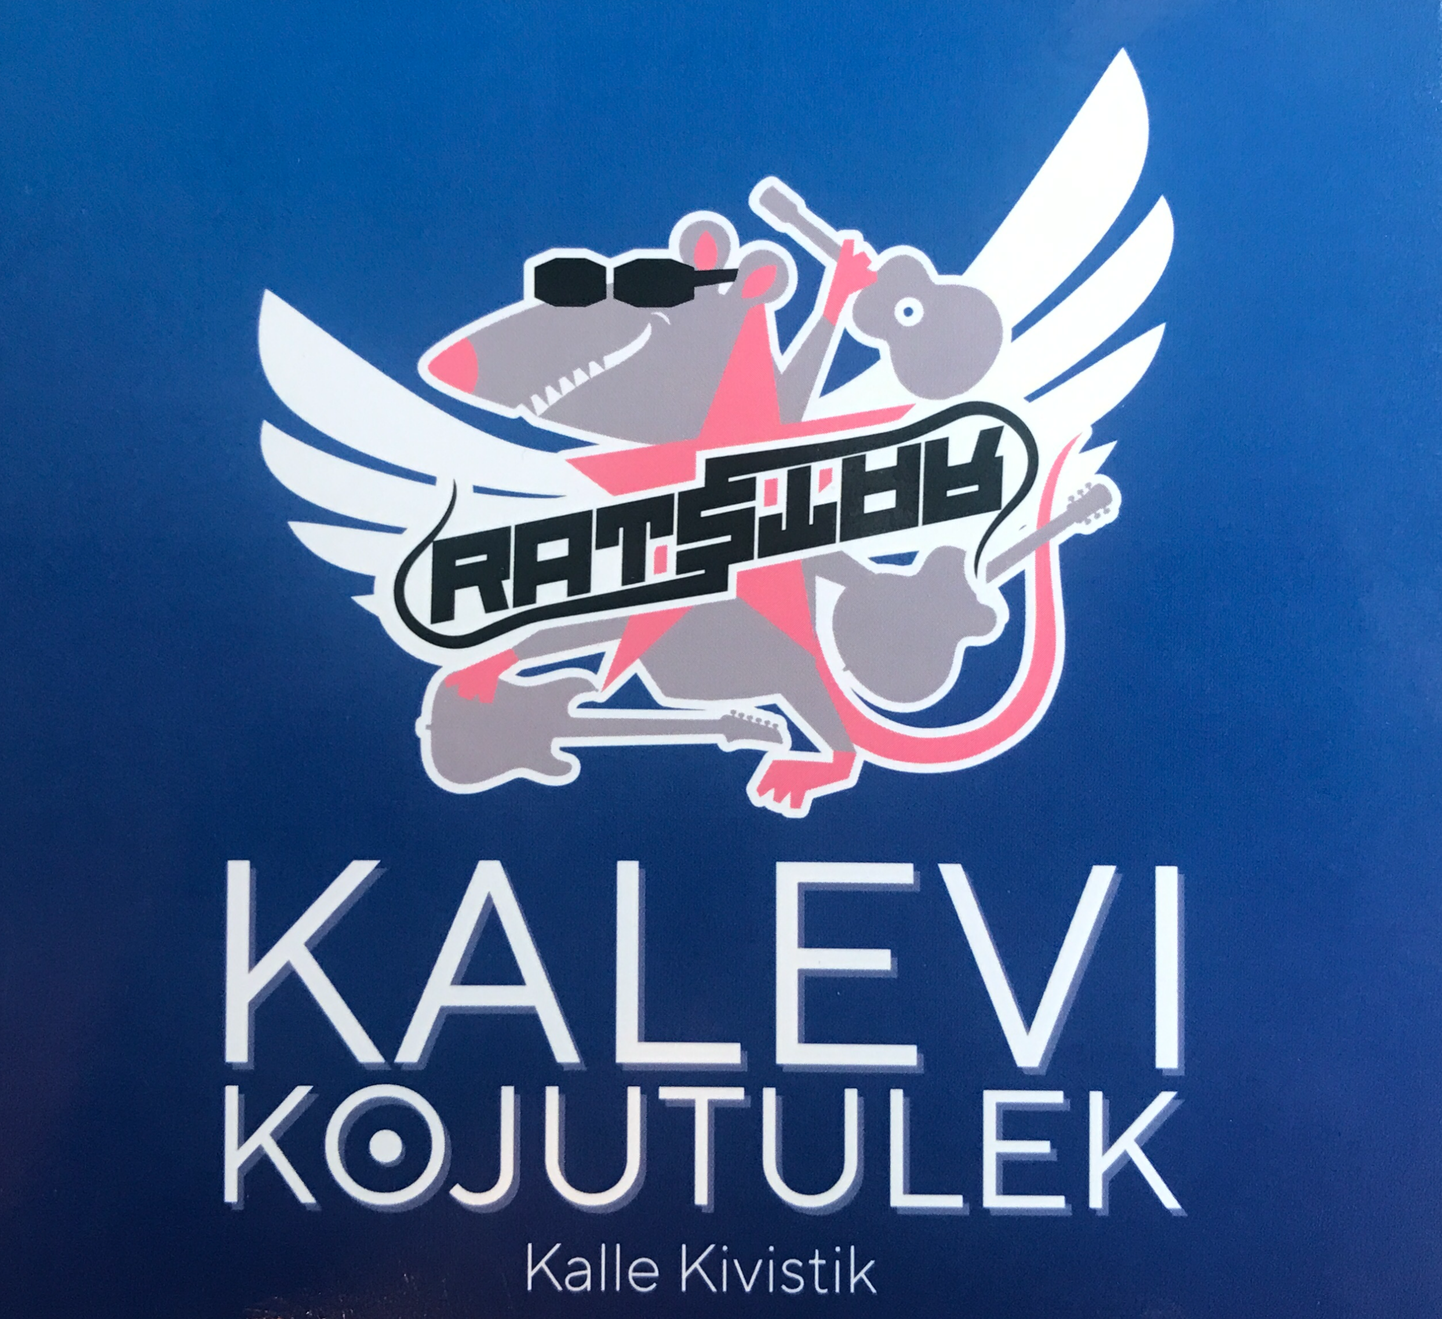 Kalle Kivistiku autoriplaat kannab pealkirja "Kalevi kojutulek".